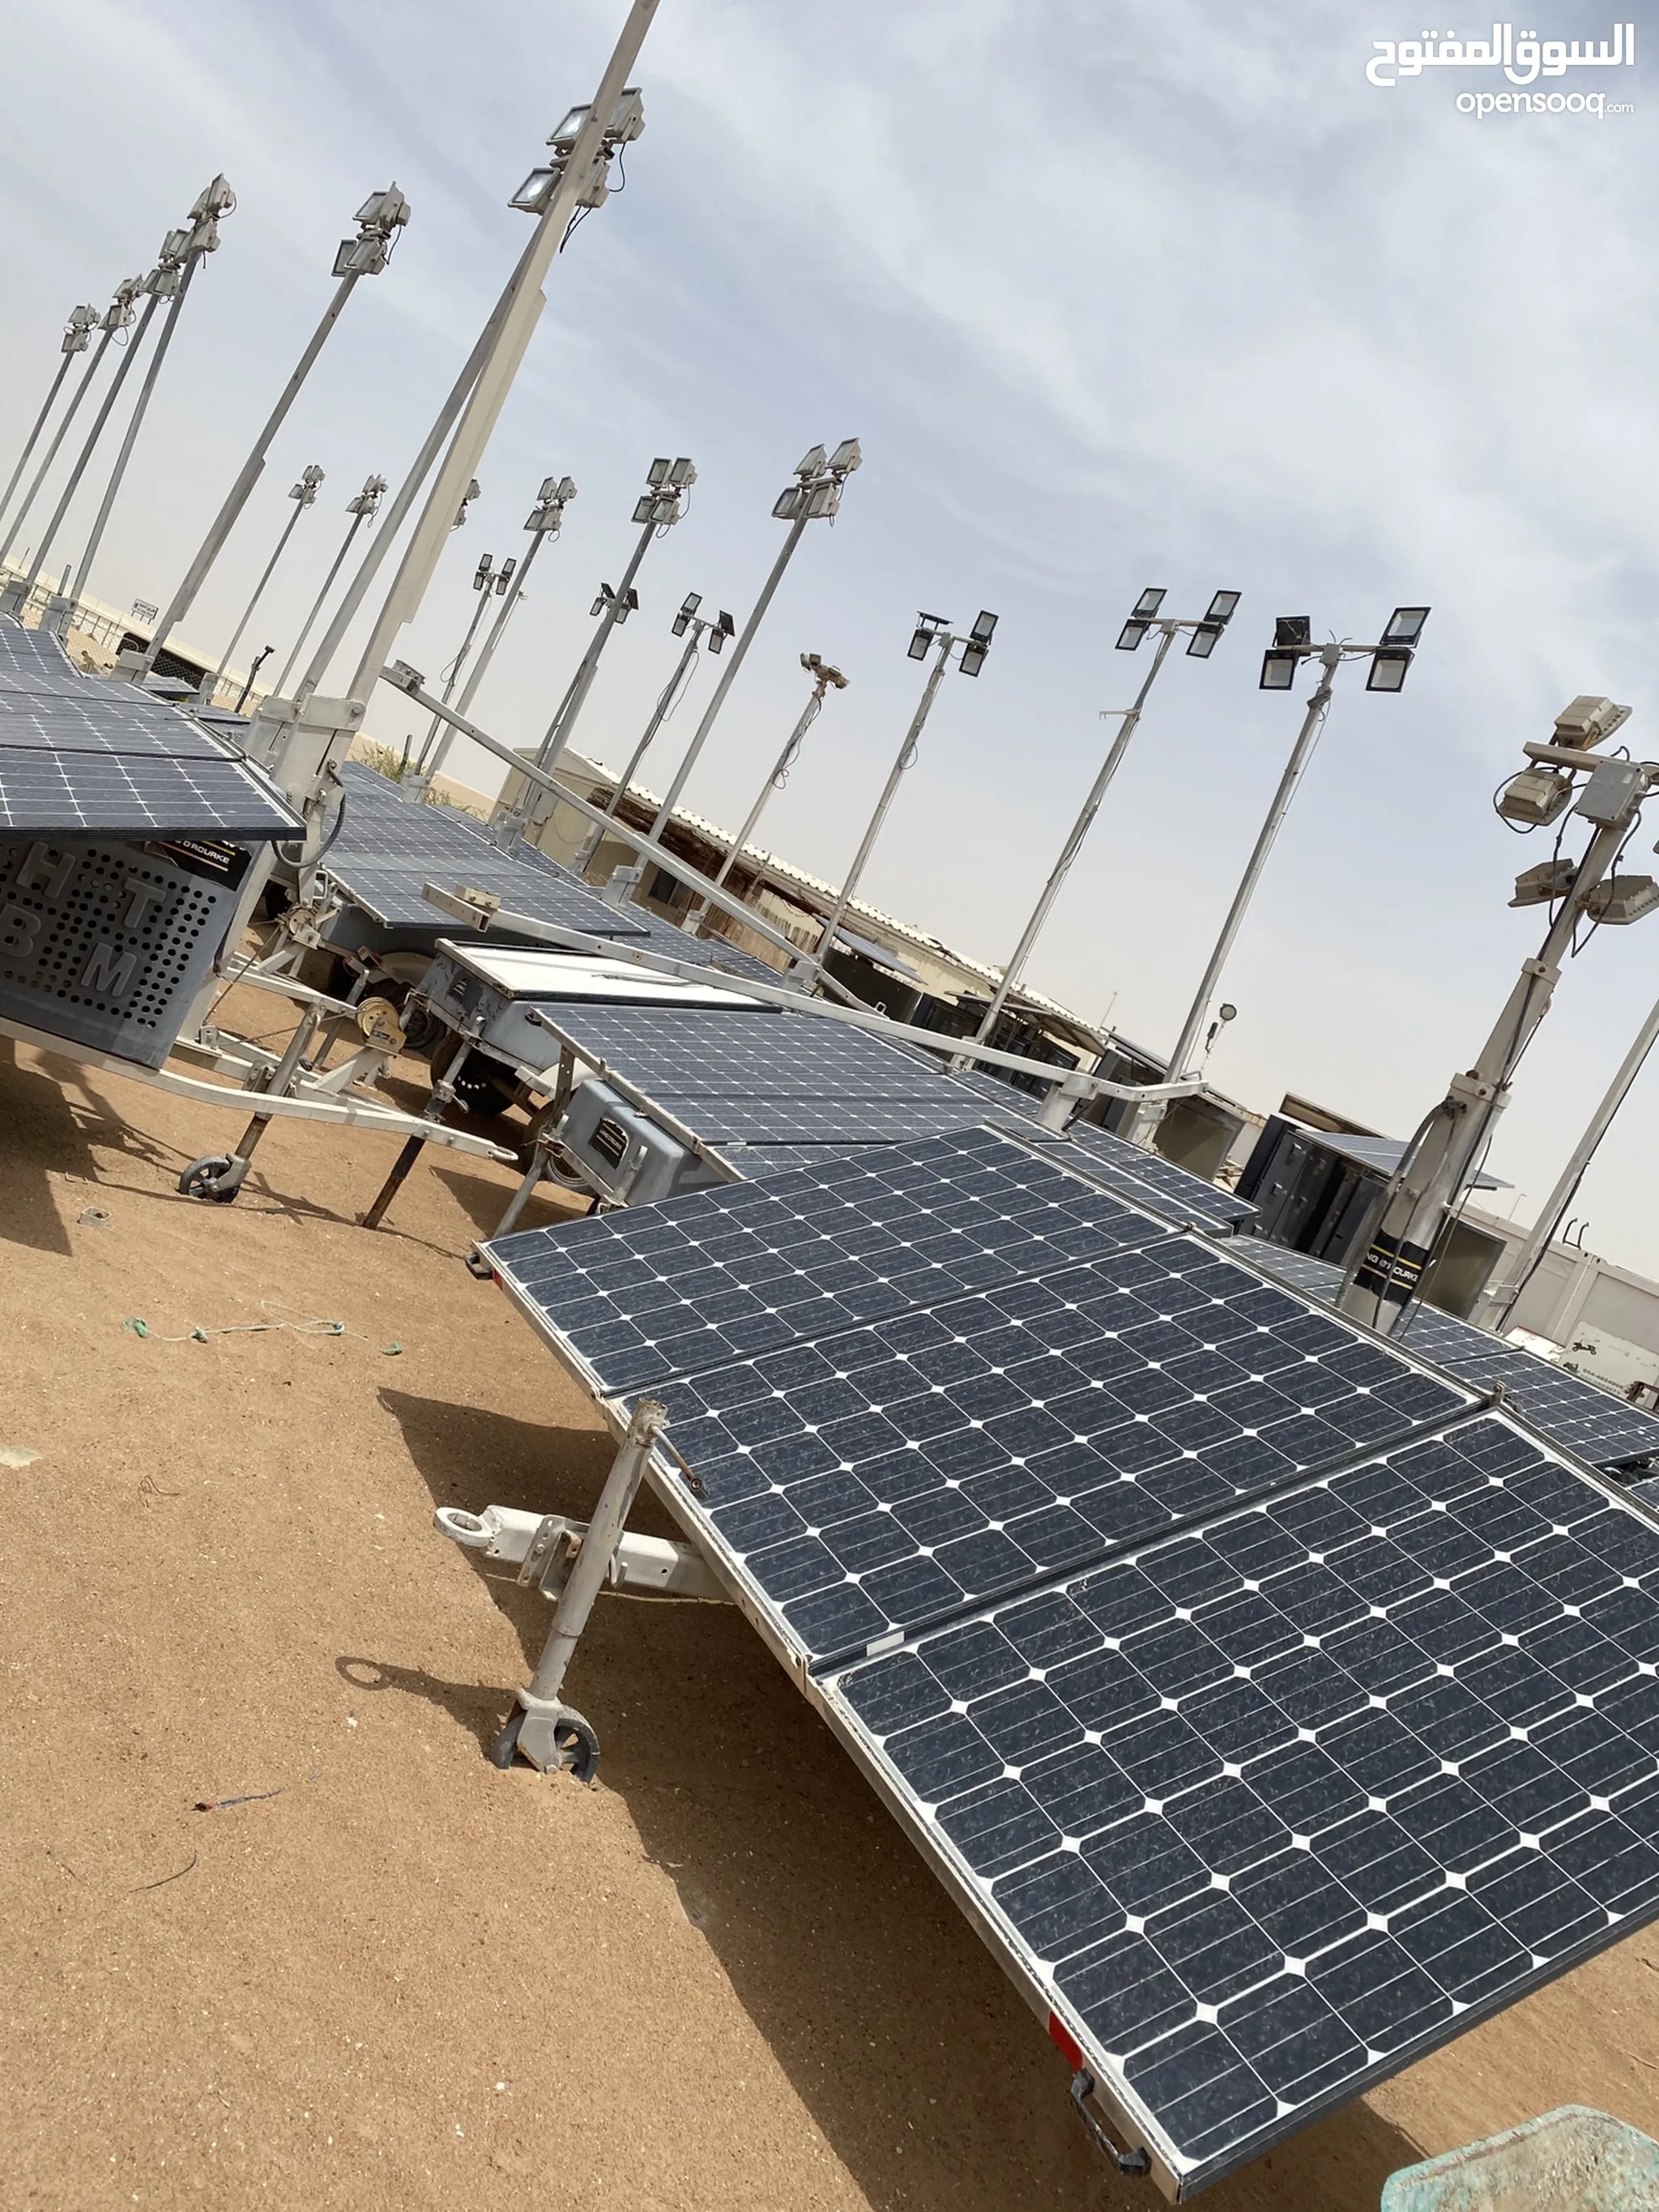 خلايا شمسية للبيع في الإمارات : خلية شمسية 12 فولت : أسعار الخلايا الشمسية  : كاش وبالتقسيط | السوق المفتوح